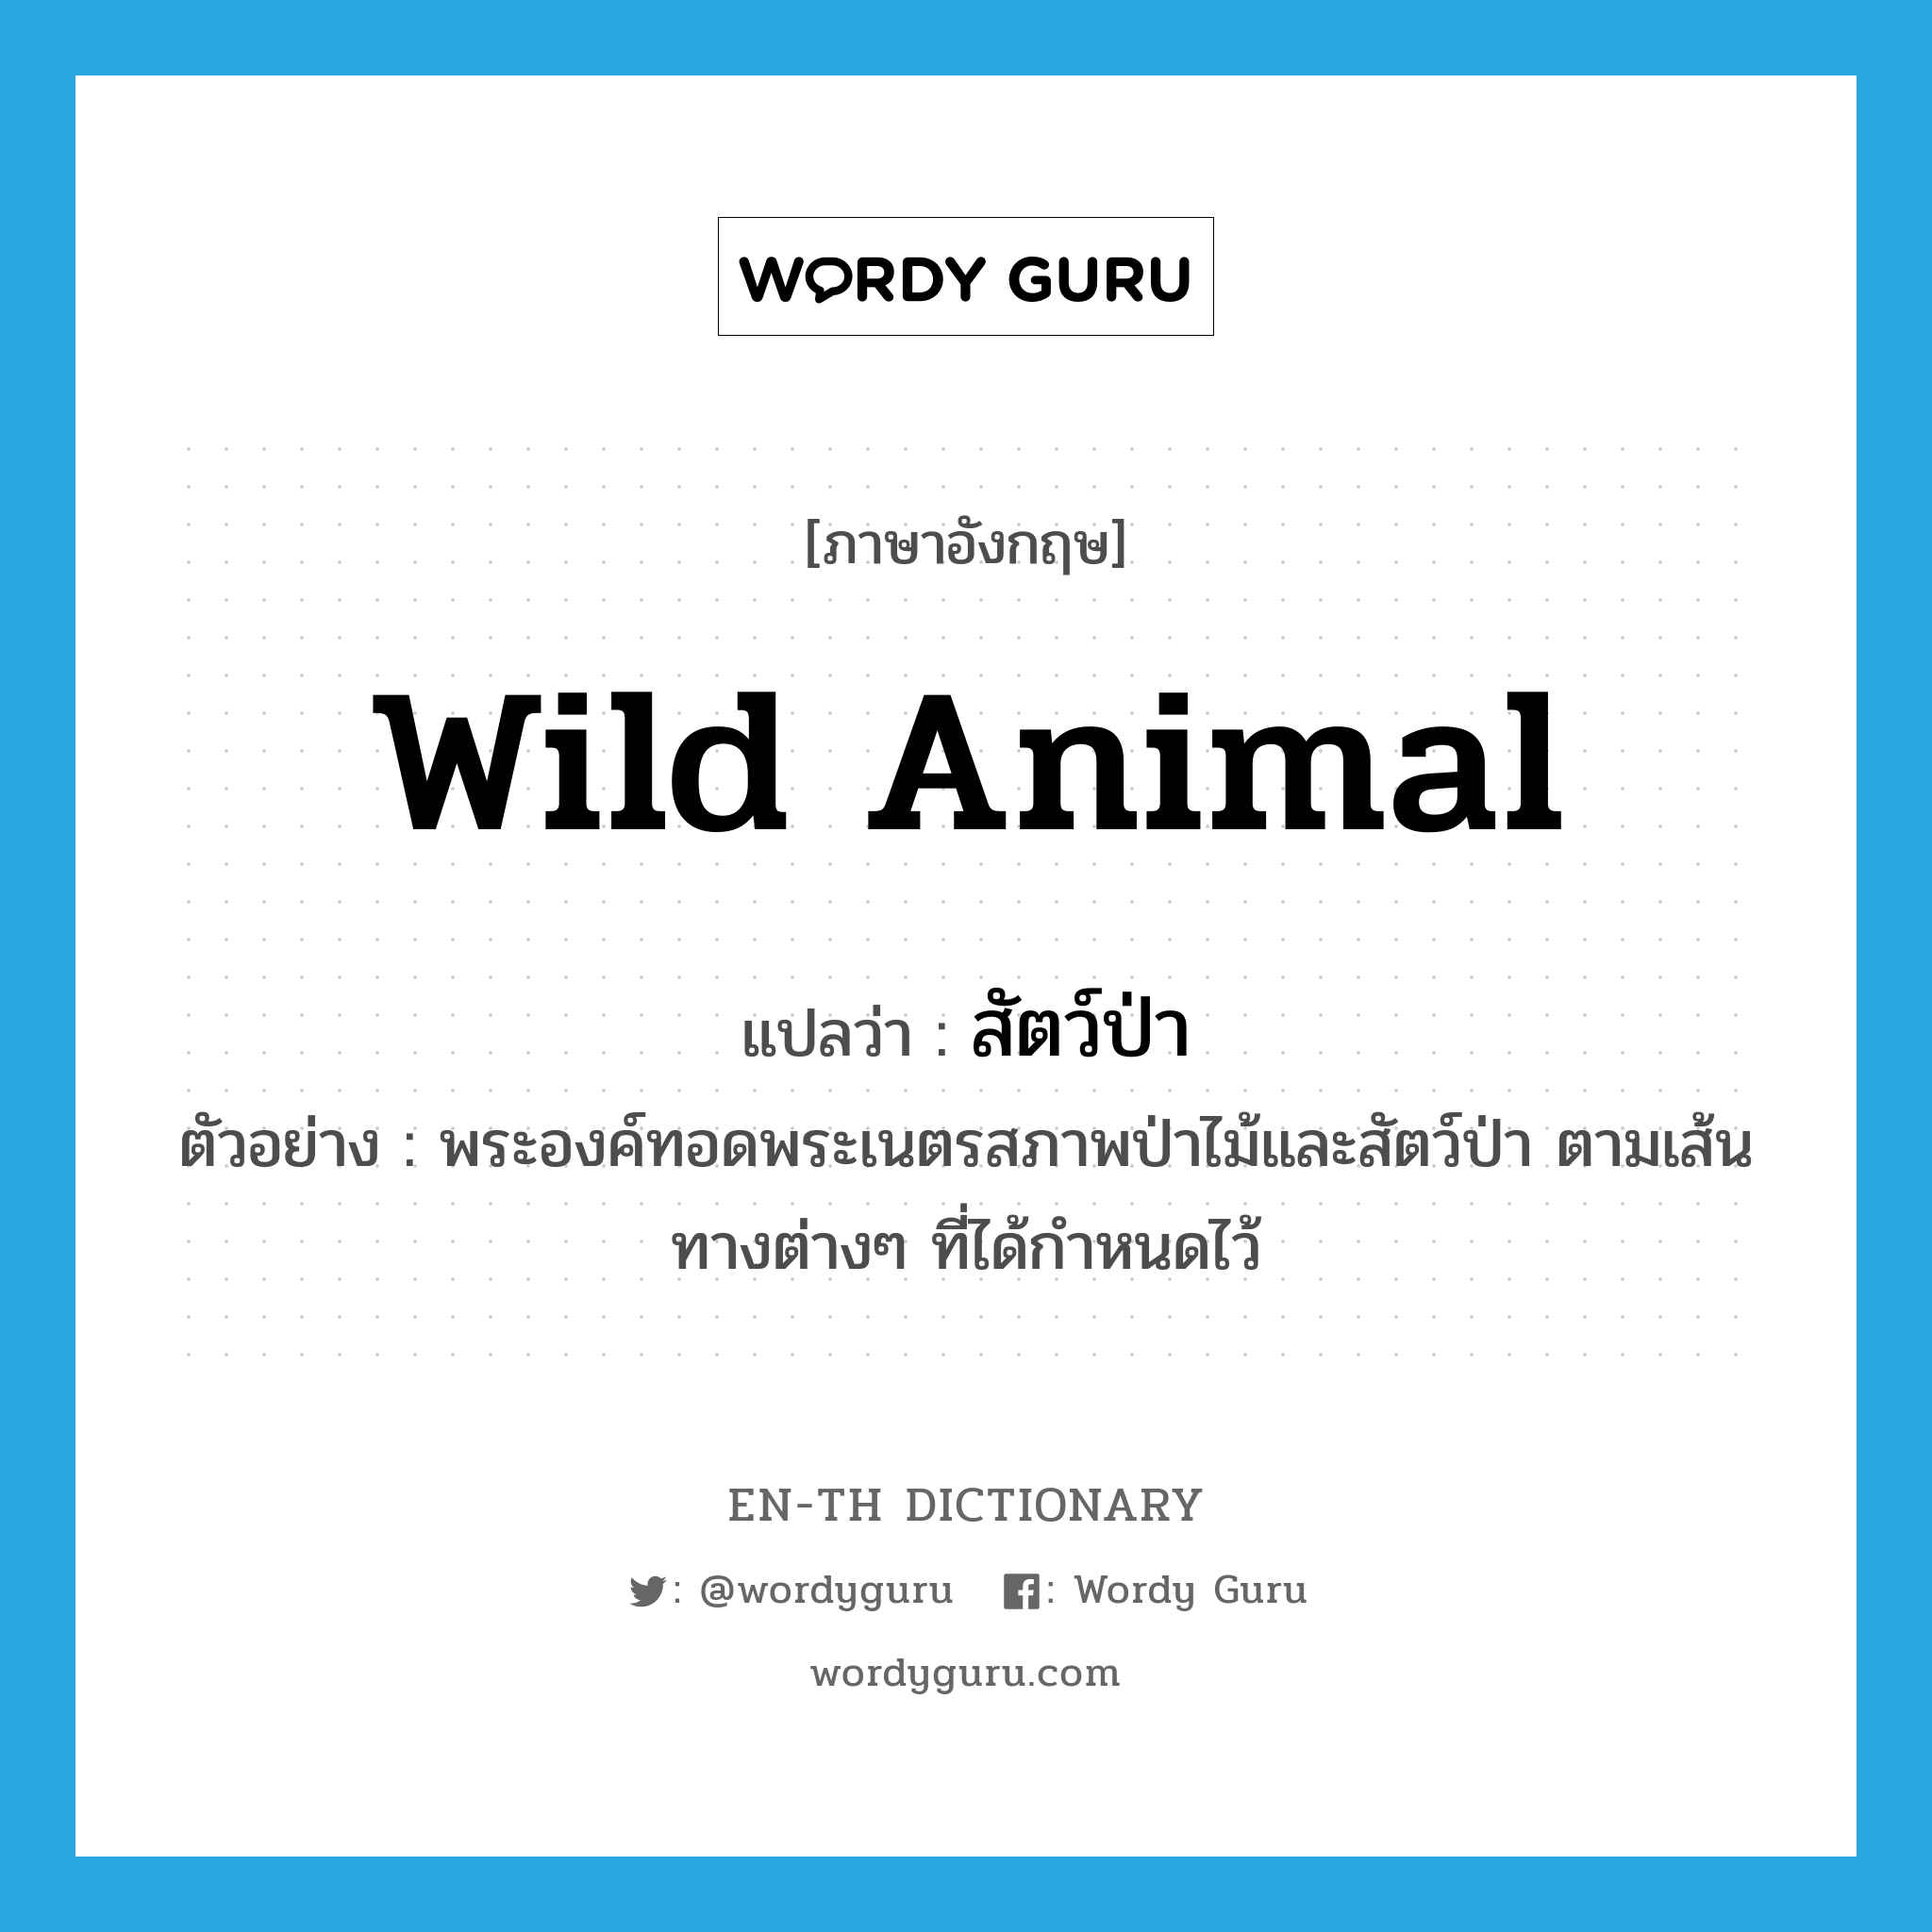 wild animal แปลว่า?, คำศัพท์ภาษาอังกฤษ wild animal แปลว่า สัตว์ป่า ประเภท N ตัวอย่าง พระองค์ทอดพระเนตรสภาพป่าไม้และสัตว์ป่า ตามเส้นทางต่างๆ ที่ได้กำหนดไว้ หมวด N